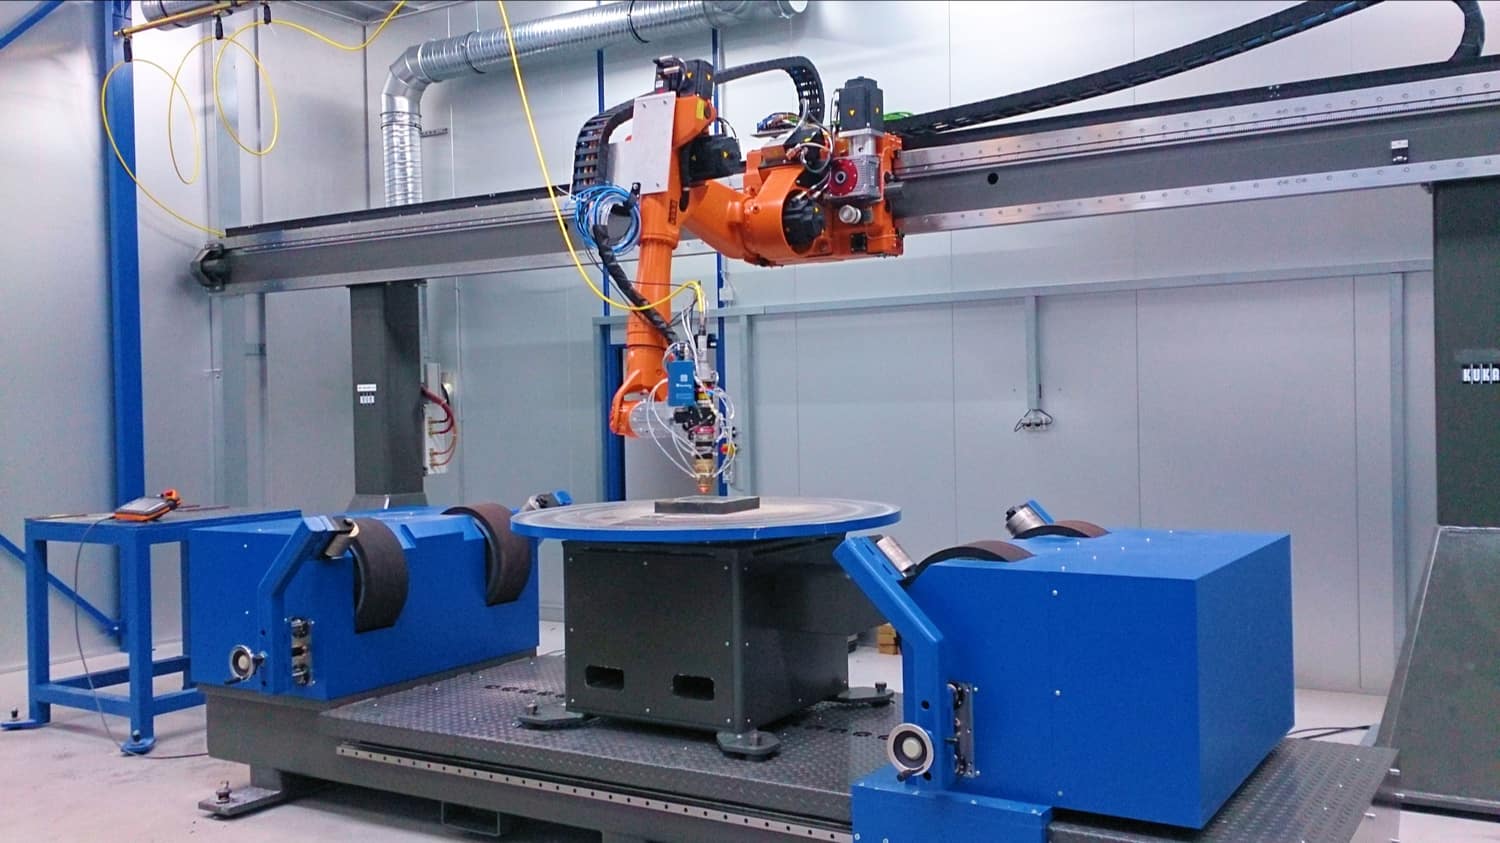  Portalachse für wandmontierten Roboter, Hub frei wählbar, Verfahrgeschwindigkeit frei wählbar bis max. 60m/min. 